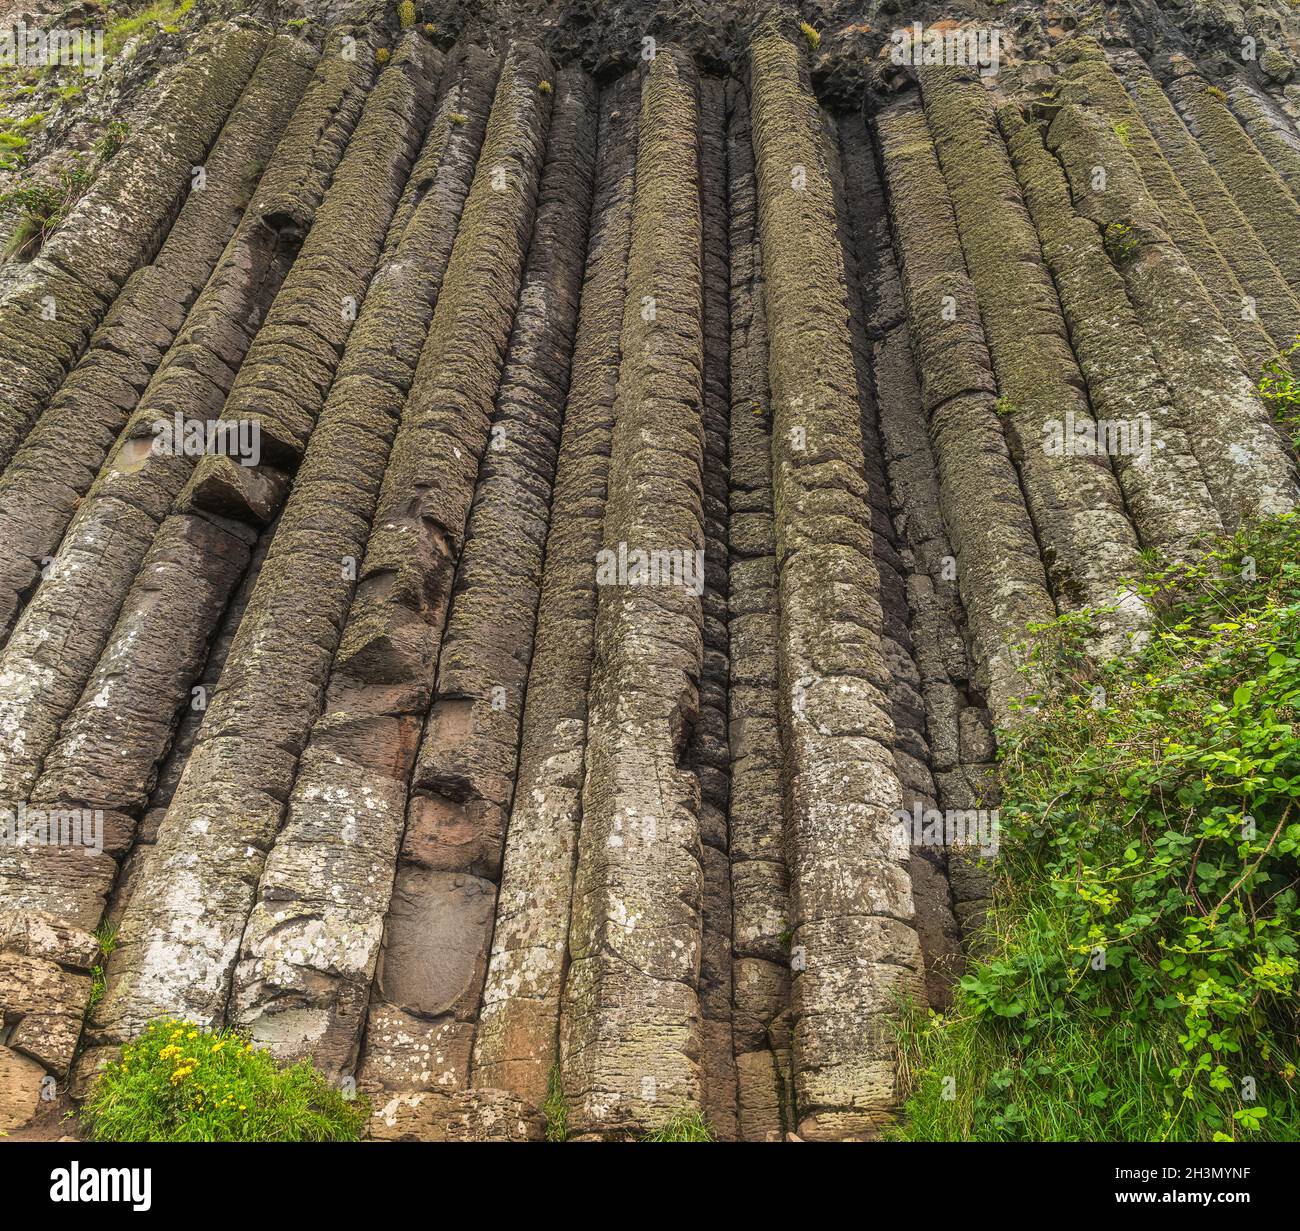 Nahaufnahme der sechseckigen Felsformation, des Amphitheaters in Giants Causeway, des Wild Atlantic Way und des UNESCO-Weltkulturerbes Nordirland Stockfoto